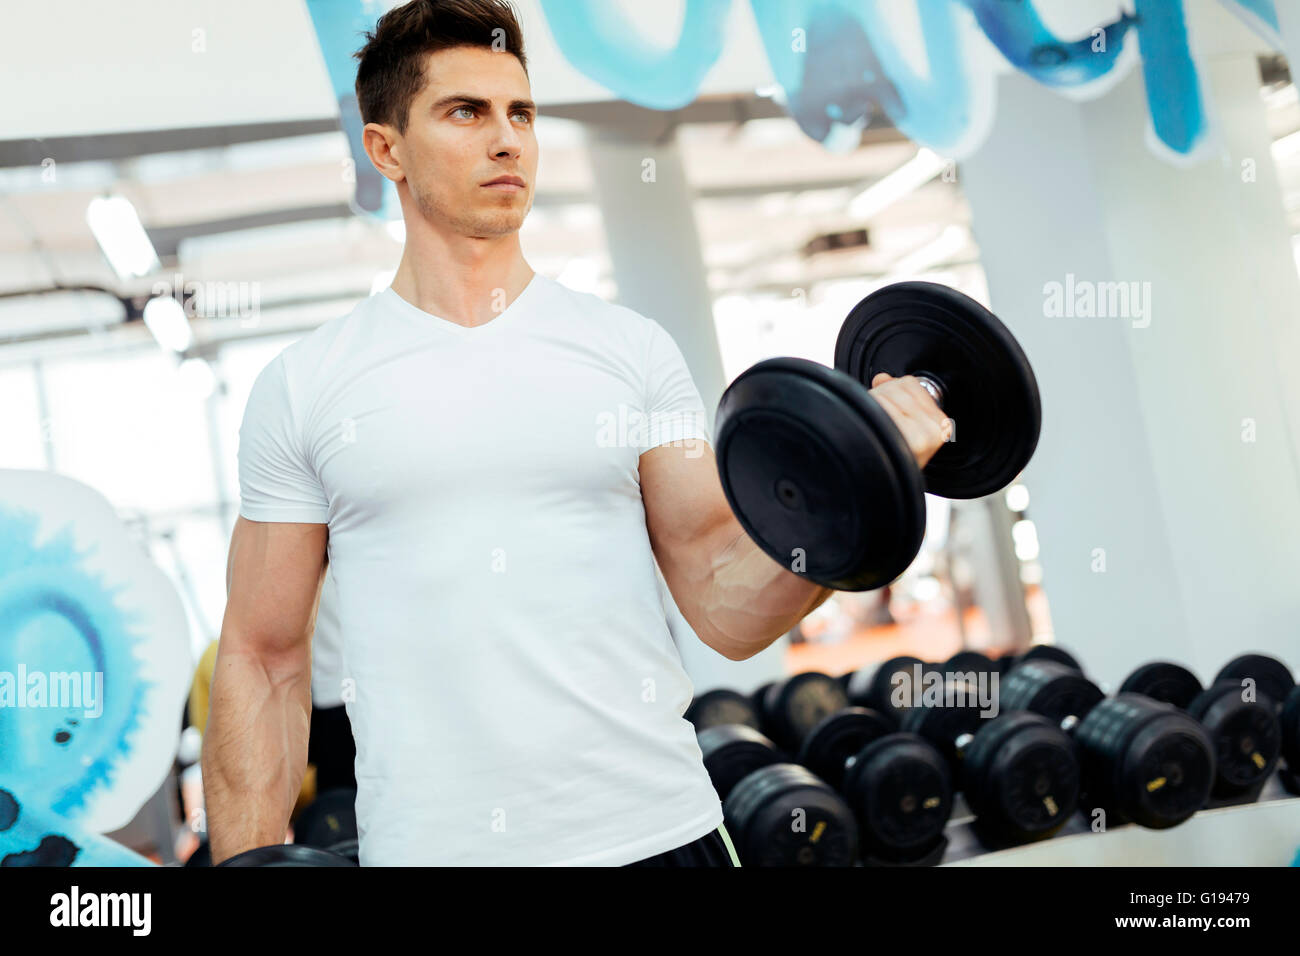 Handsome man lifting weights in gym et demeurer en forme Banque D'Images